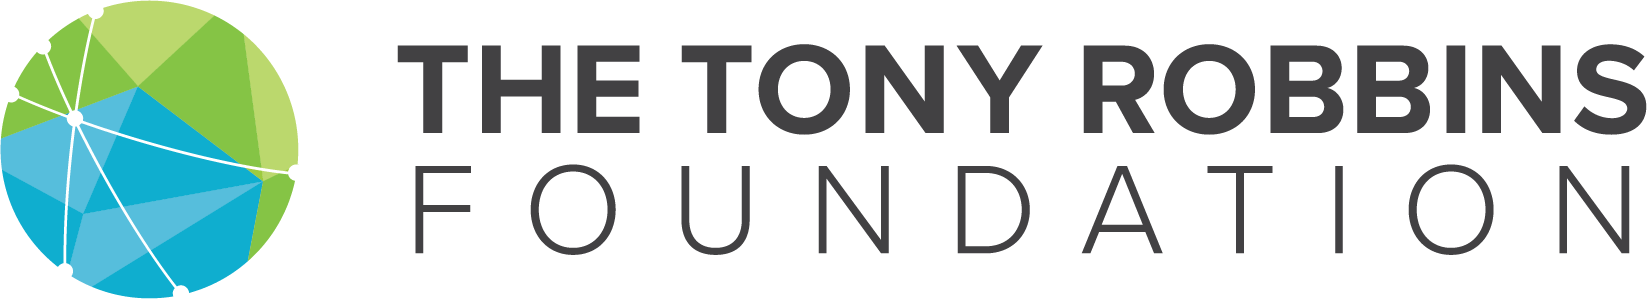 The Tony Robbins Foundation